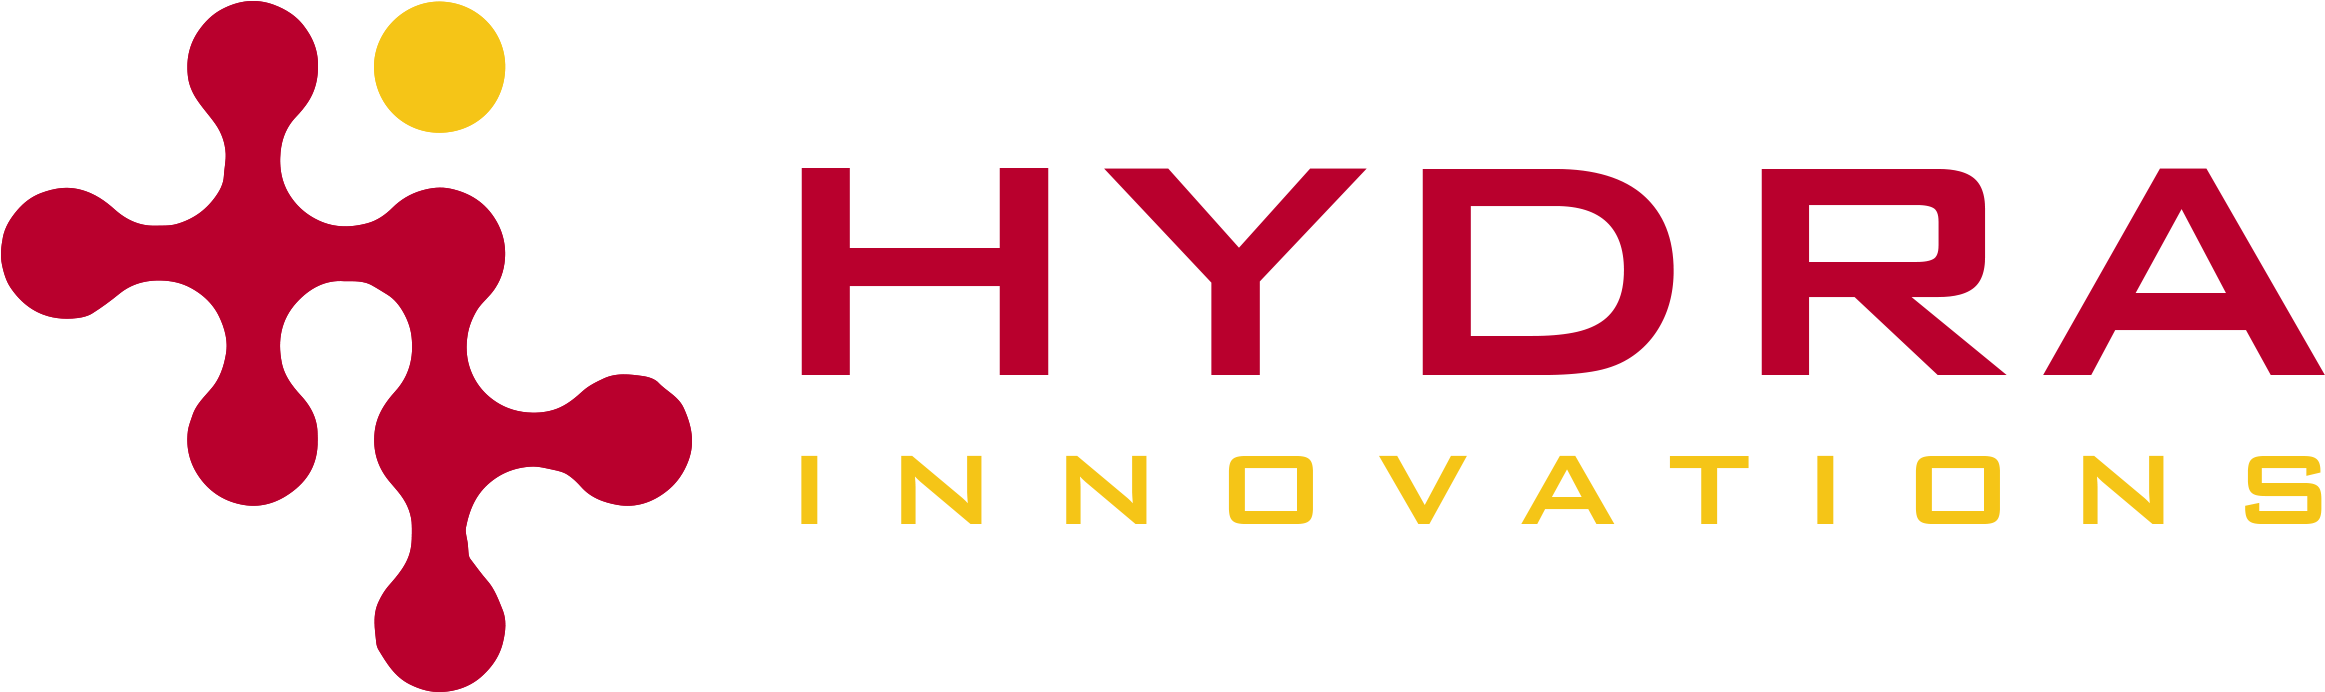 Logo Hydra PNG Gambar berkualitas tinggi